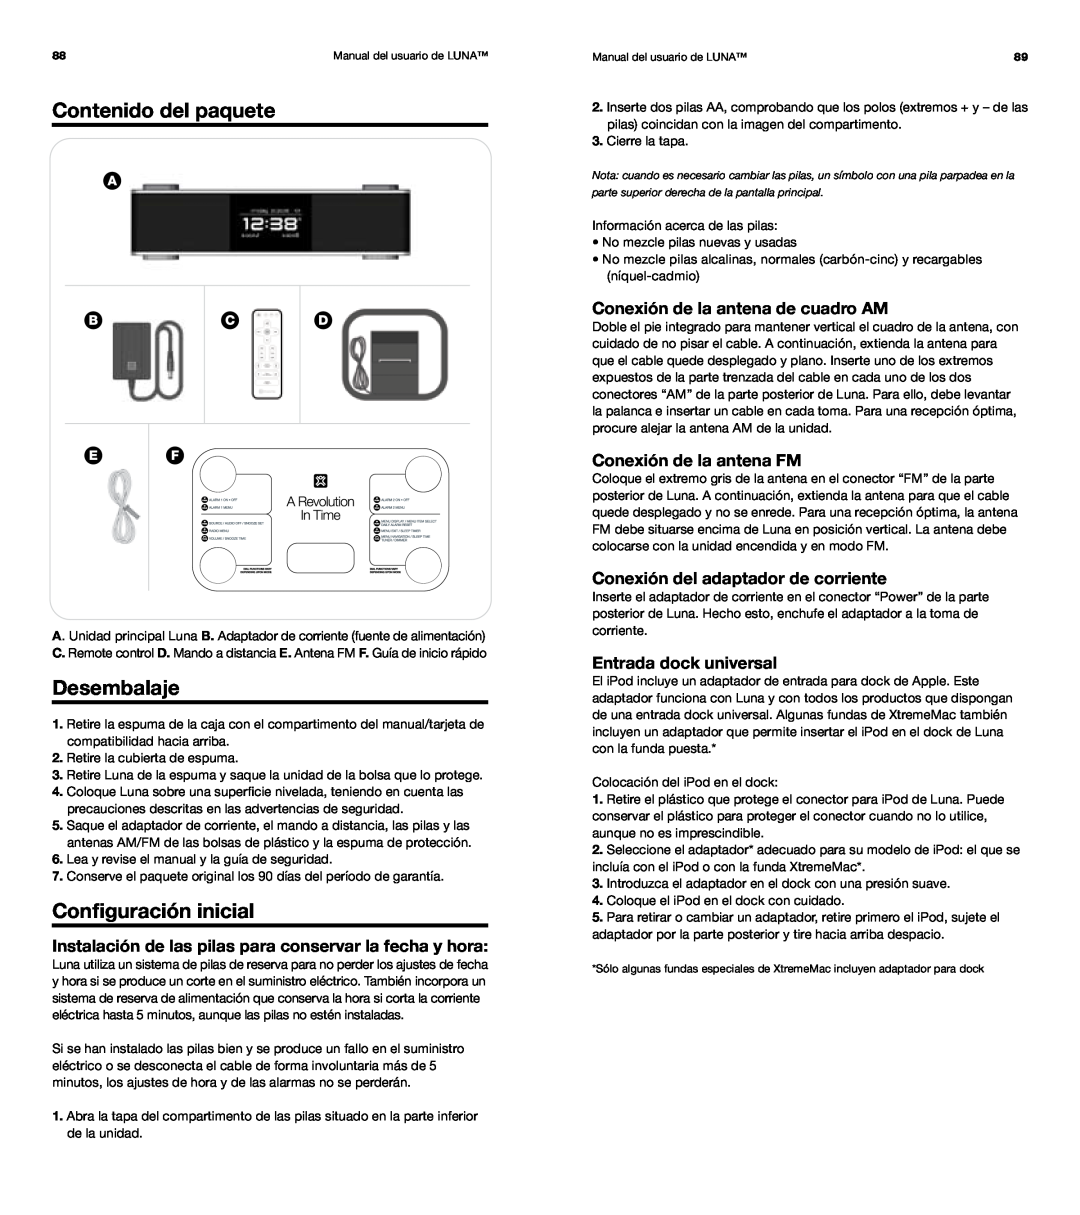 XtremeMac Room Audio System Contenido del paquete, Desembalaje, Configuración inicial, Conexión de la antena de cuadro AM 